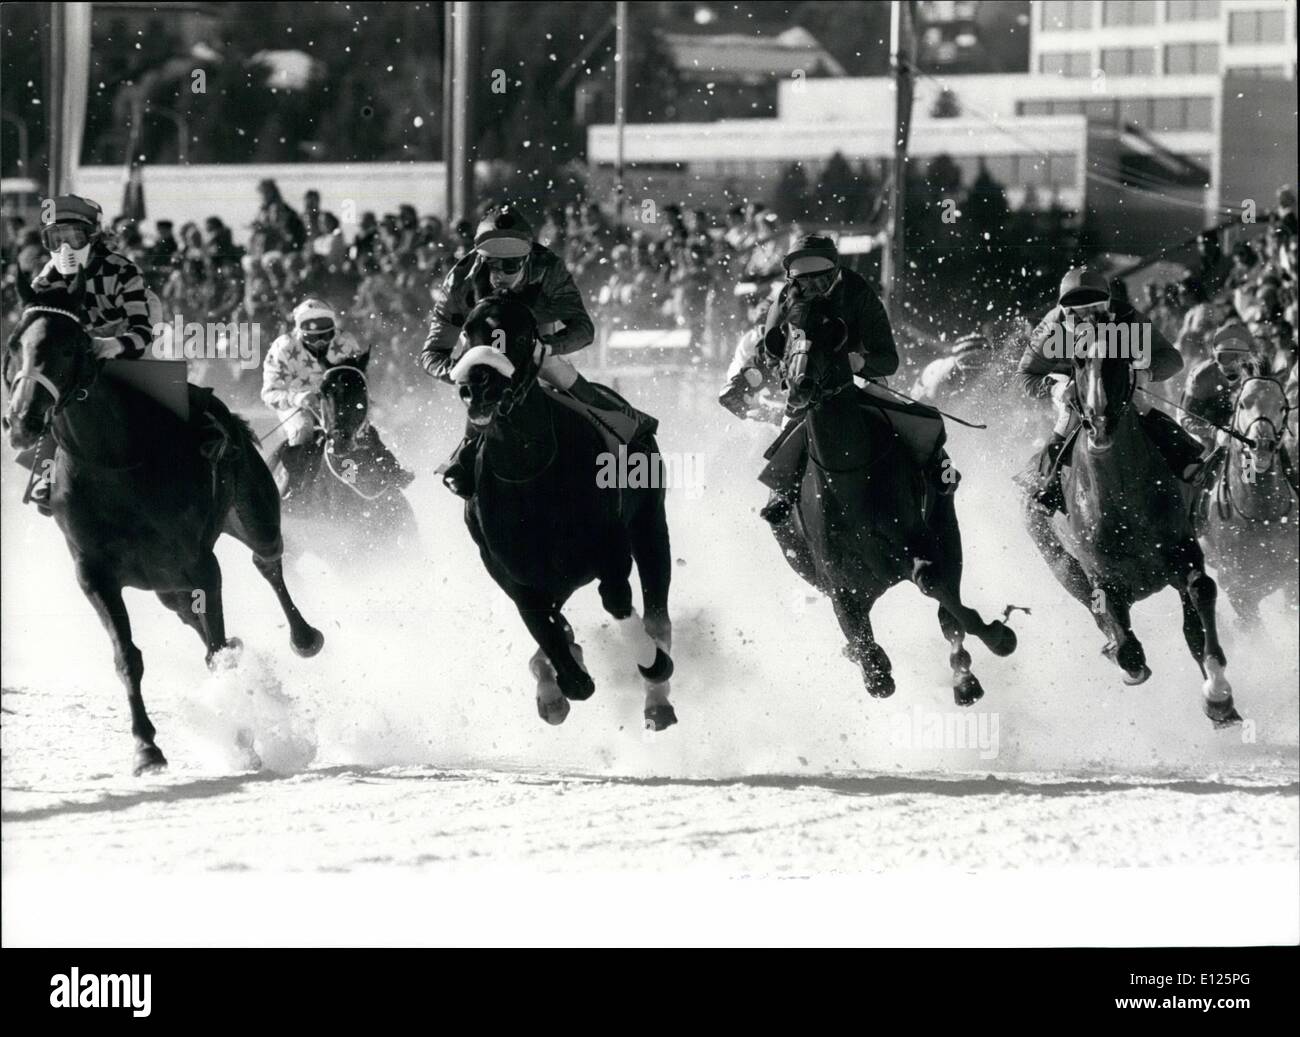 Febbraio 02, 1989 - Piatto gare su ghiaccio: Swiss winter resort San Moritz è rinomata per emozionanti corse di cavalli sul suo lago ghiacciato. La figura mostra i cavalli nella finitura della ''Prix de Gourmet"", una gara piatta oltre 1600 metri, che ha avuto luogo a gennaio 5th. Foto Stock